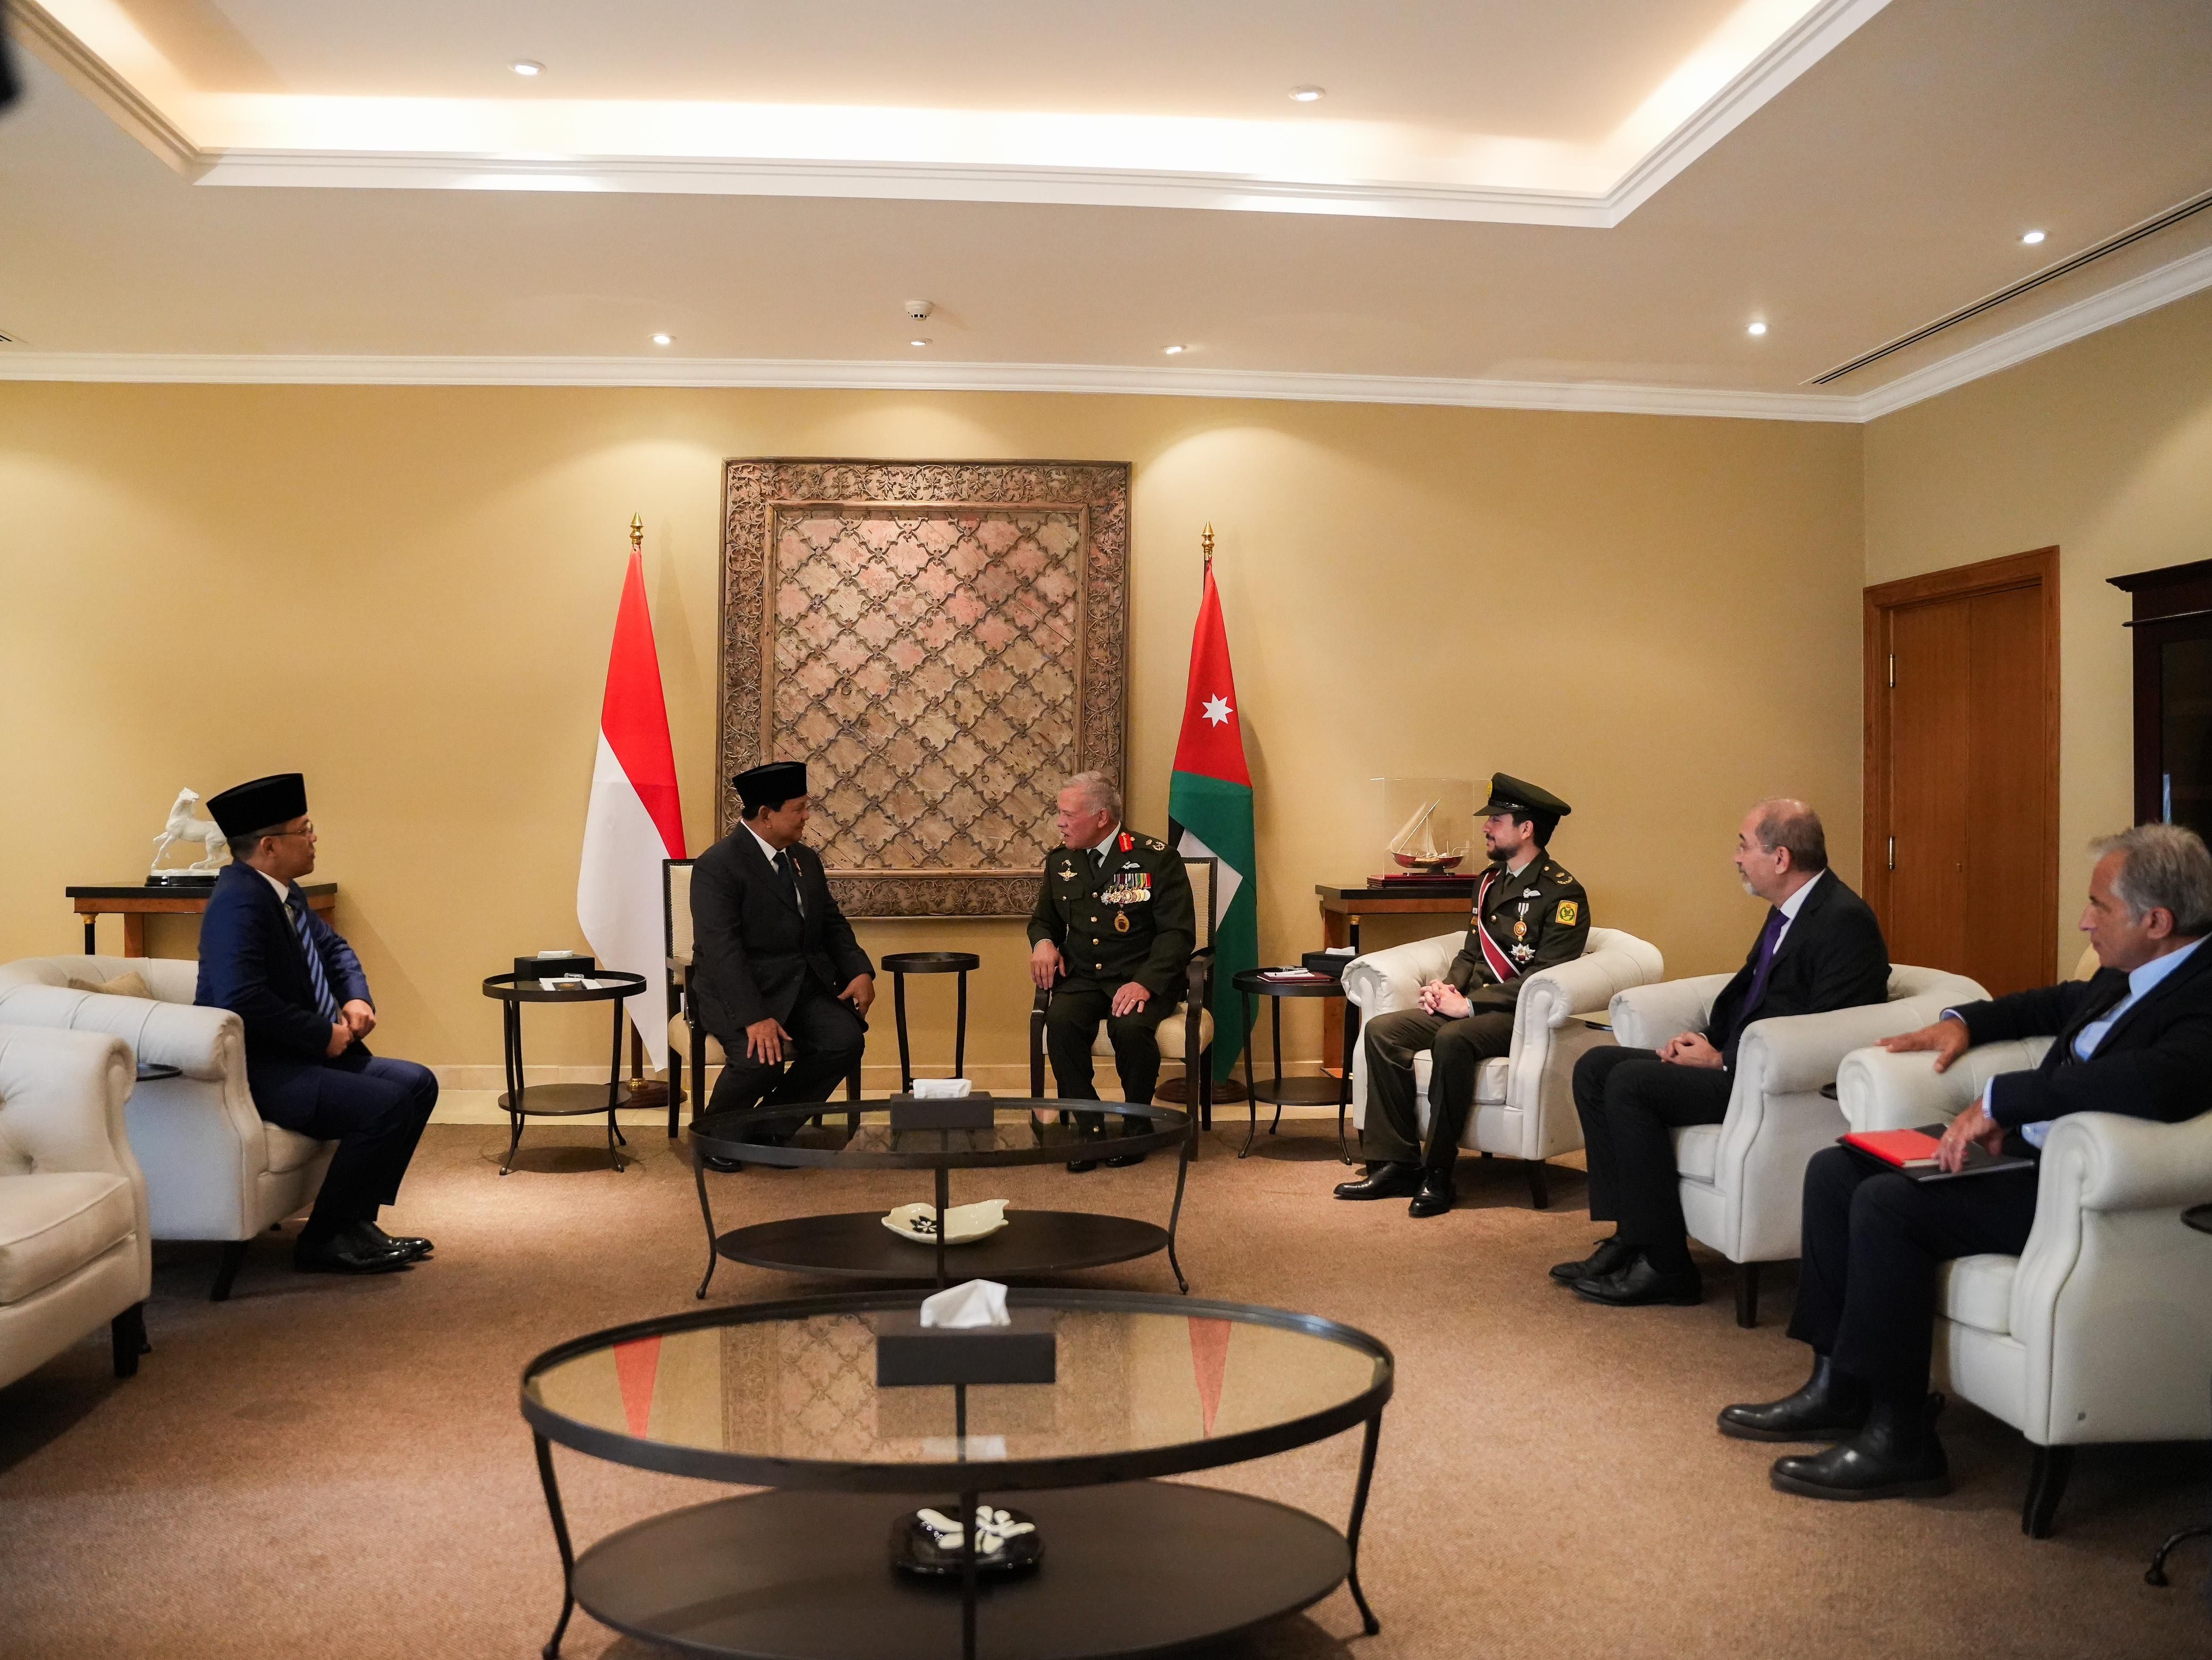 Temui Raja Yordania, Prabowo: Indonesia Terus Pantau Perkembangan Memburuk di Gaza